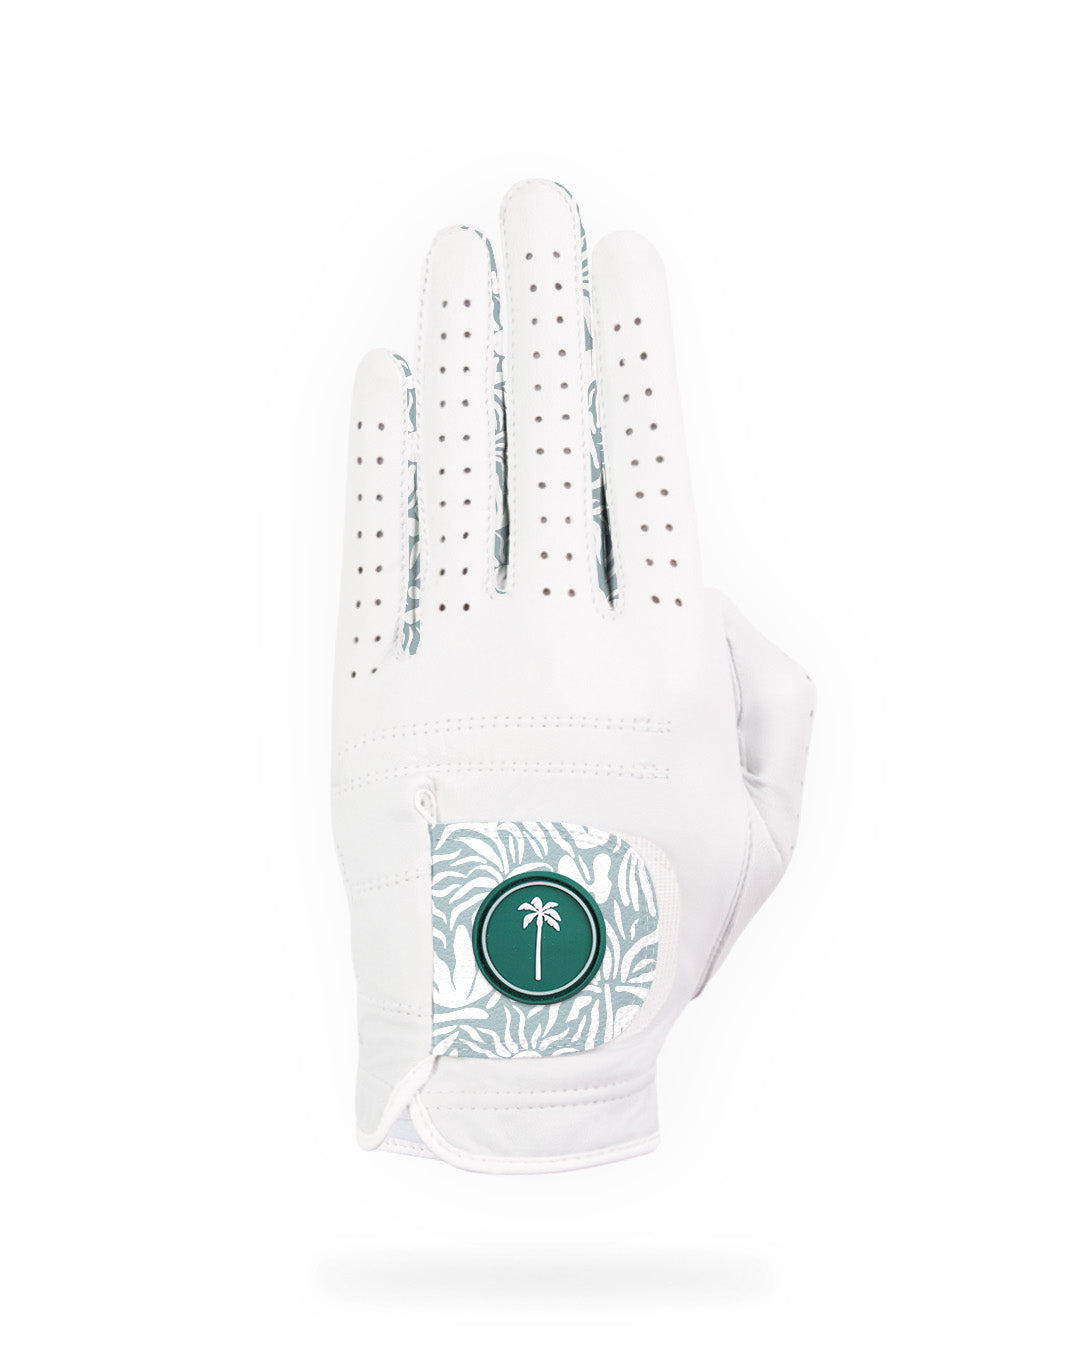 Women's Wanderer Glove - Palm Golf Co.